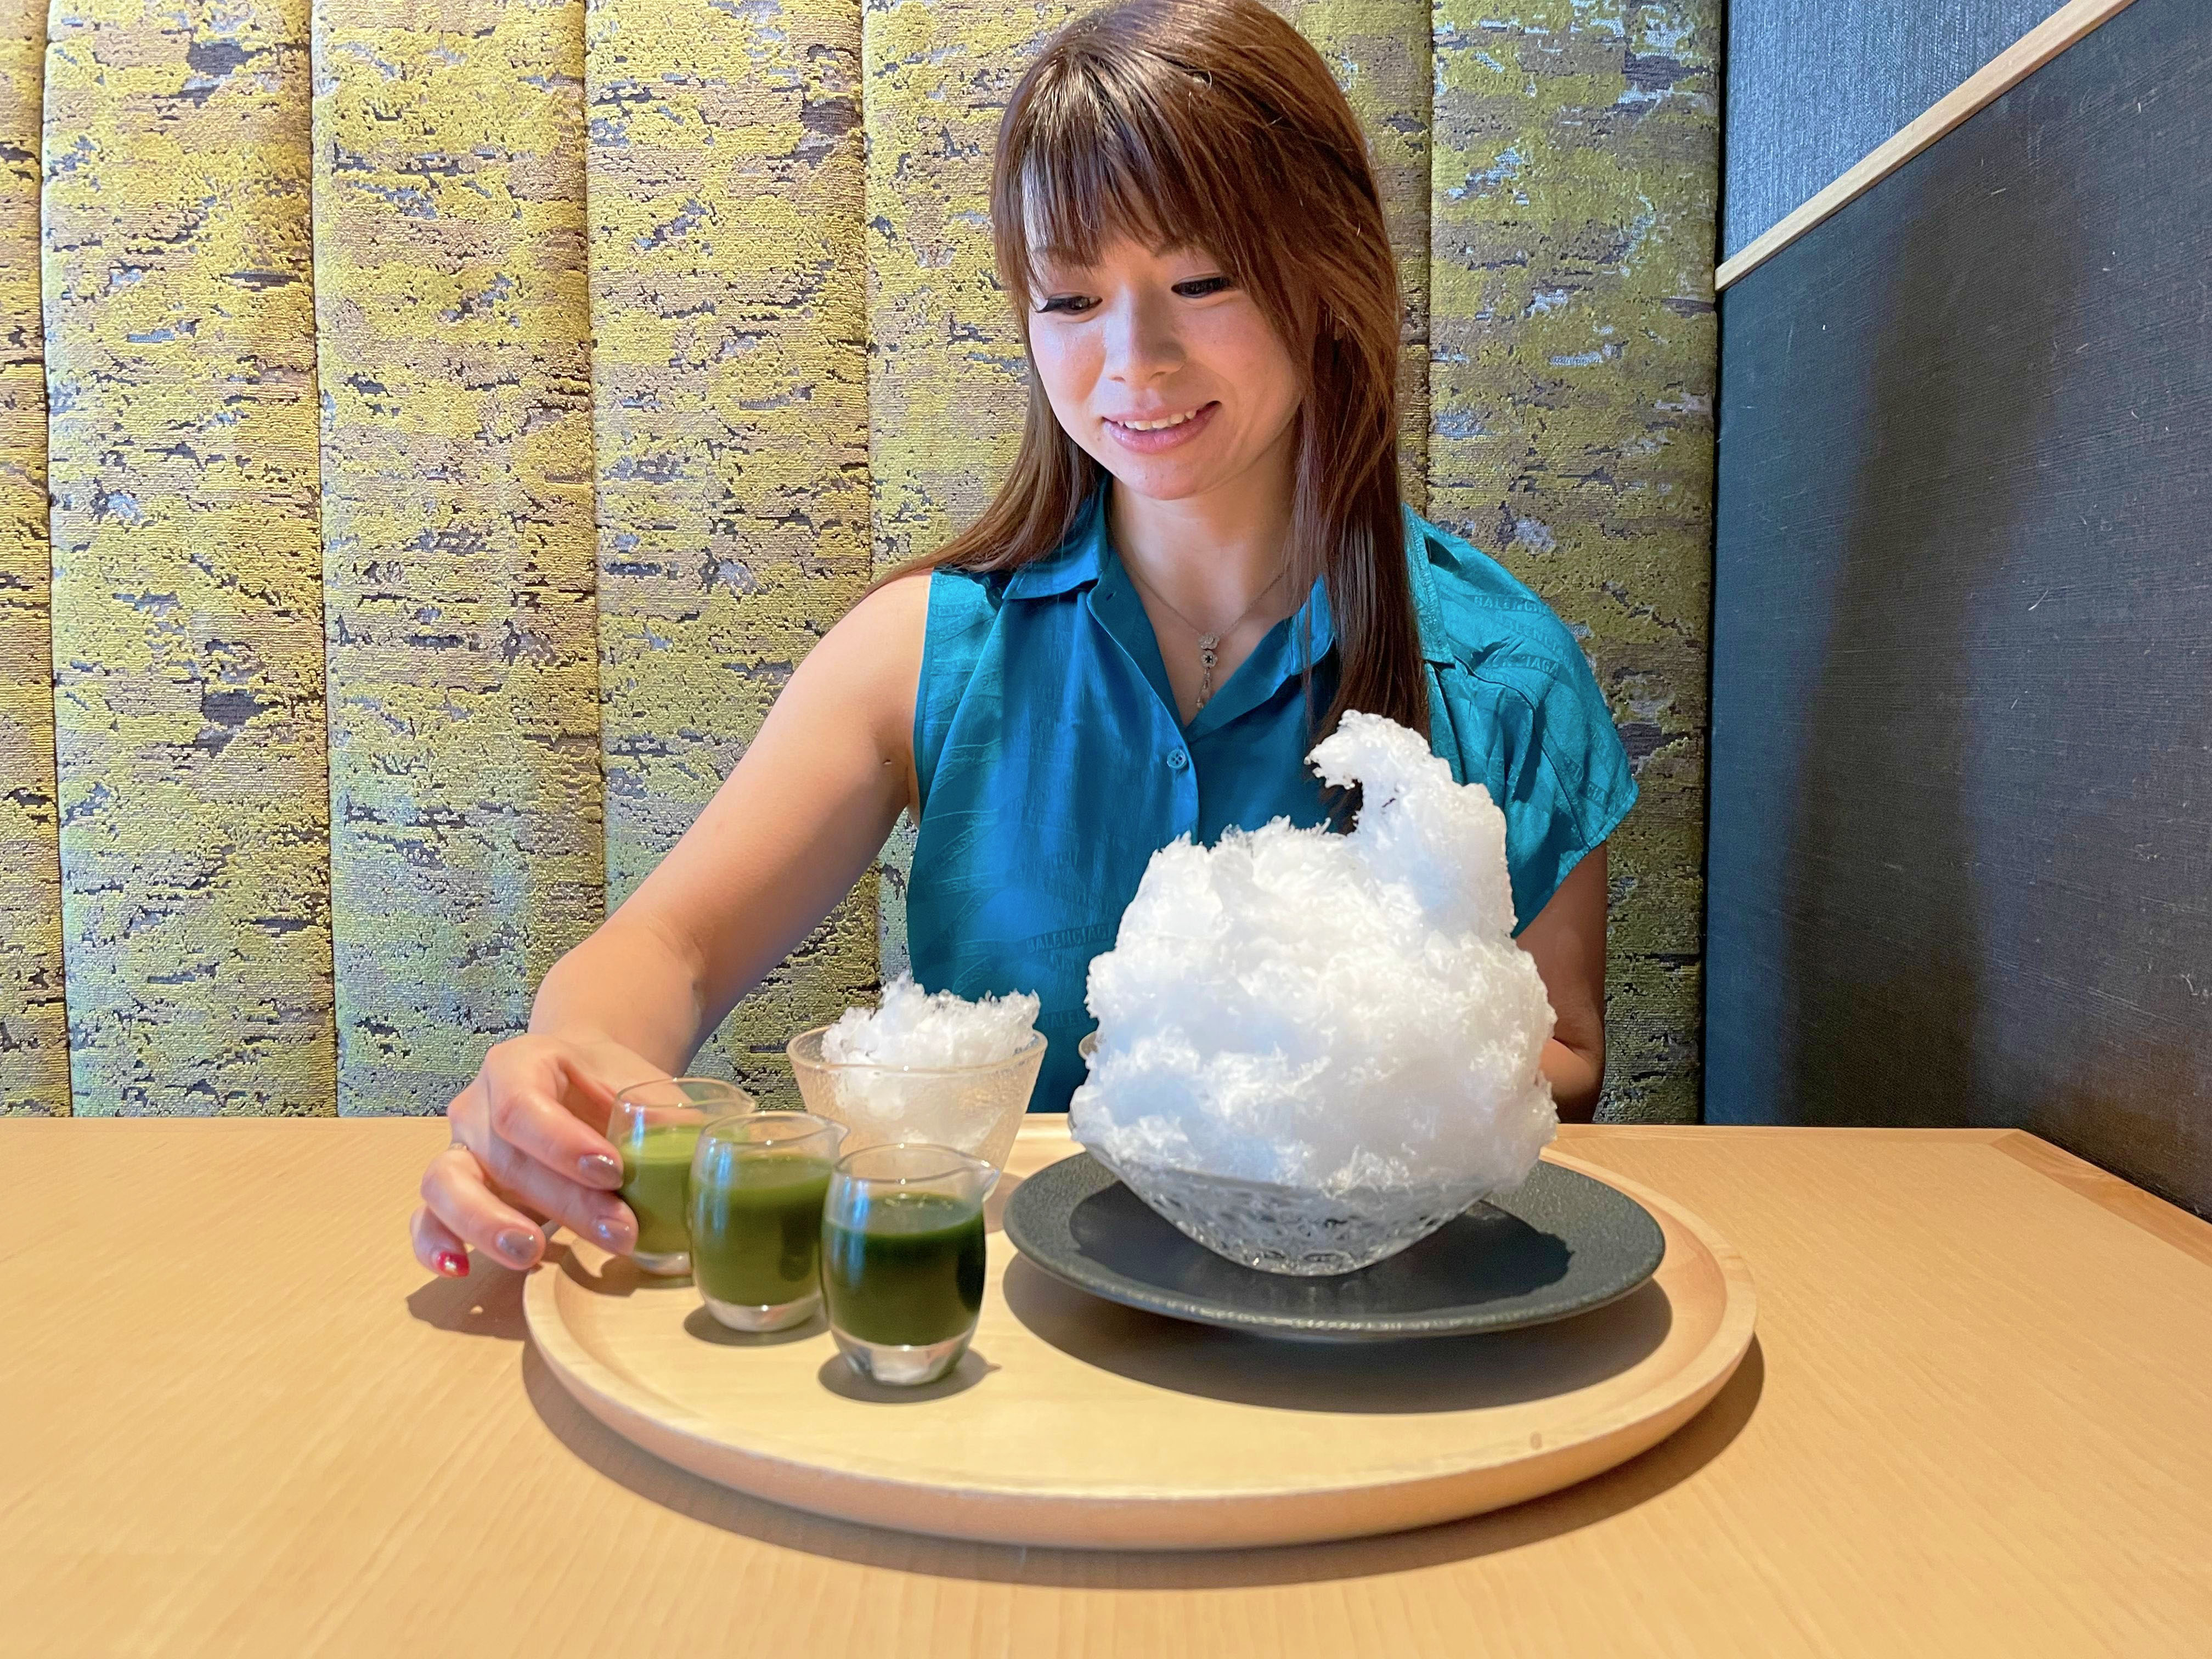 スイーツライター佐藤ひと美さんが薦める渋谷スクランブルスクエアの夏スイーツ2021年のかき氷トレンドは、